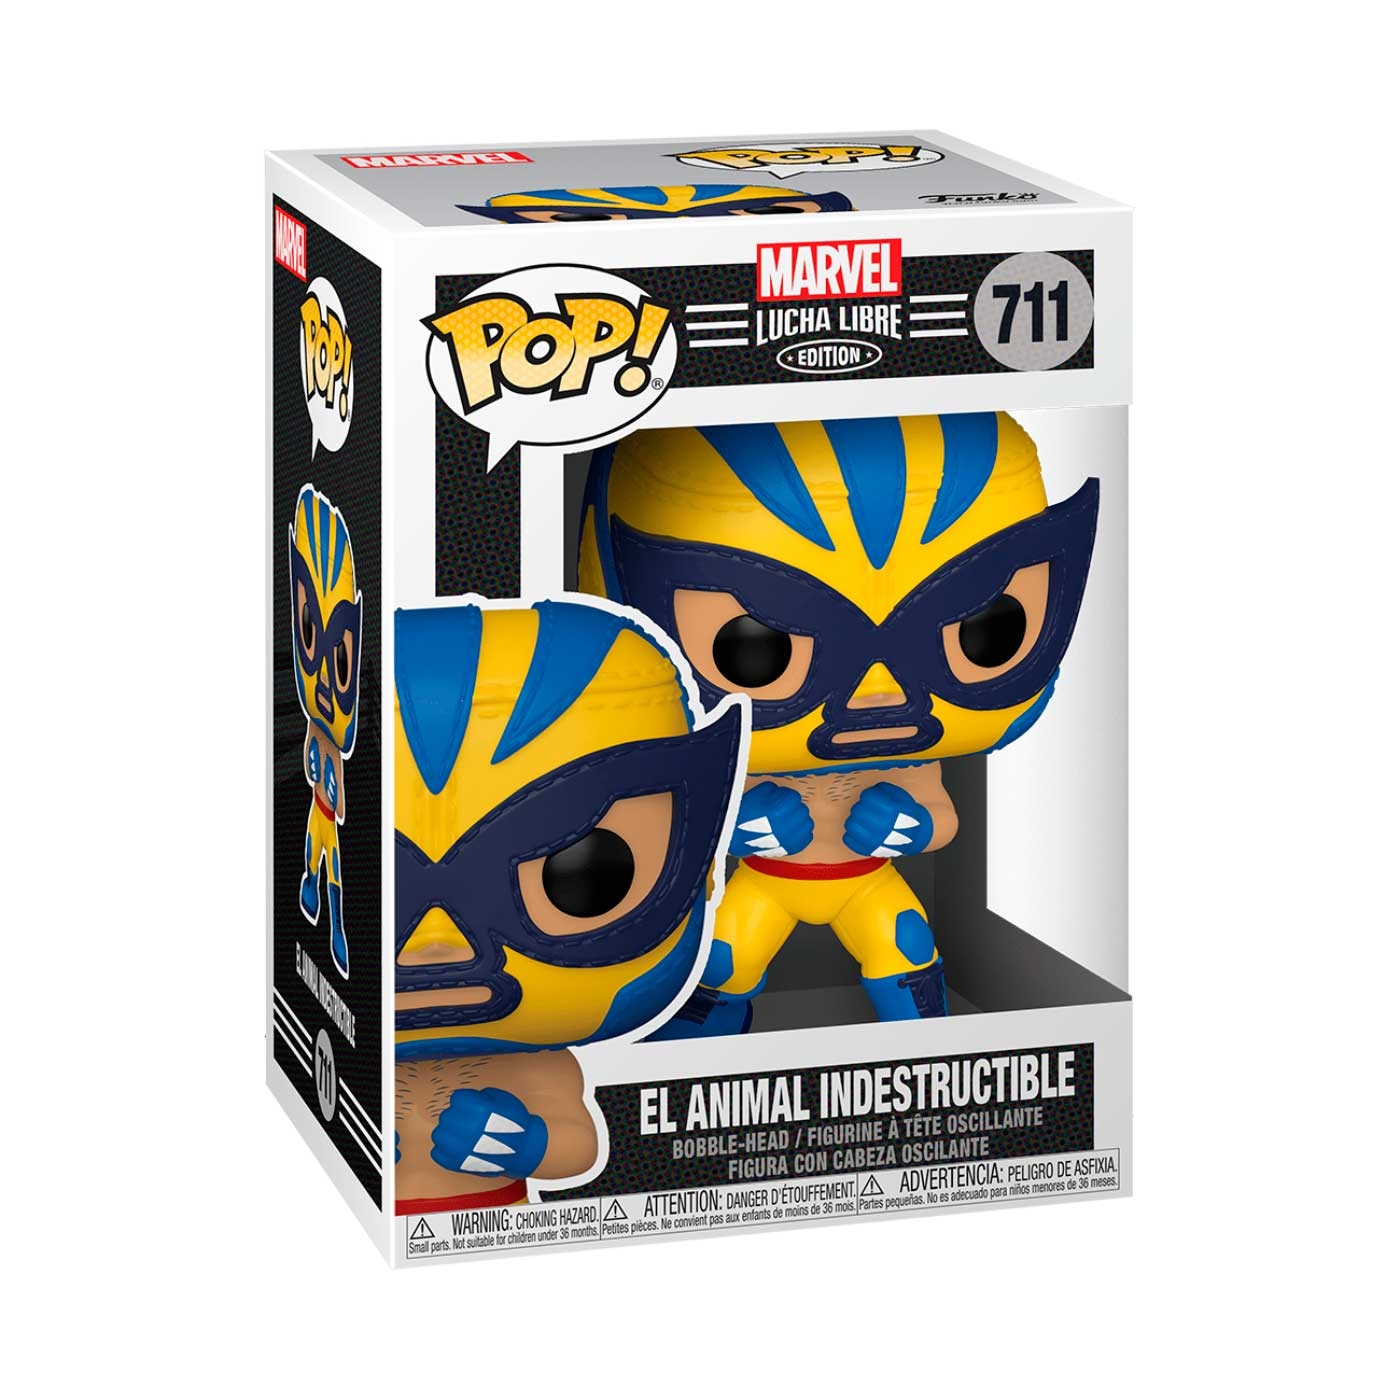 Funko POP Marvel Luchadores Wolverine Animal Indestructible